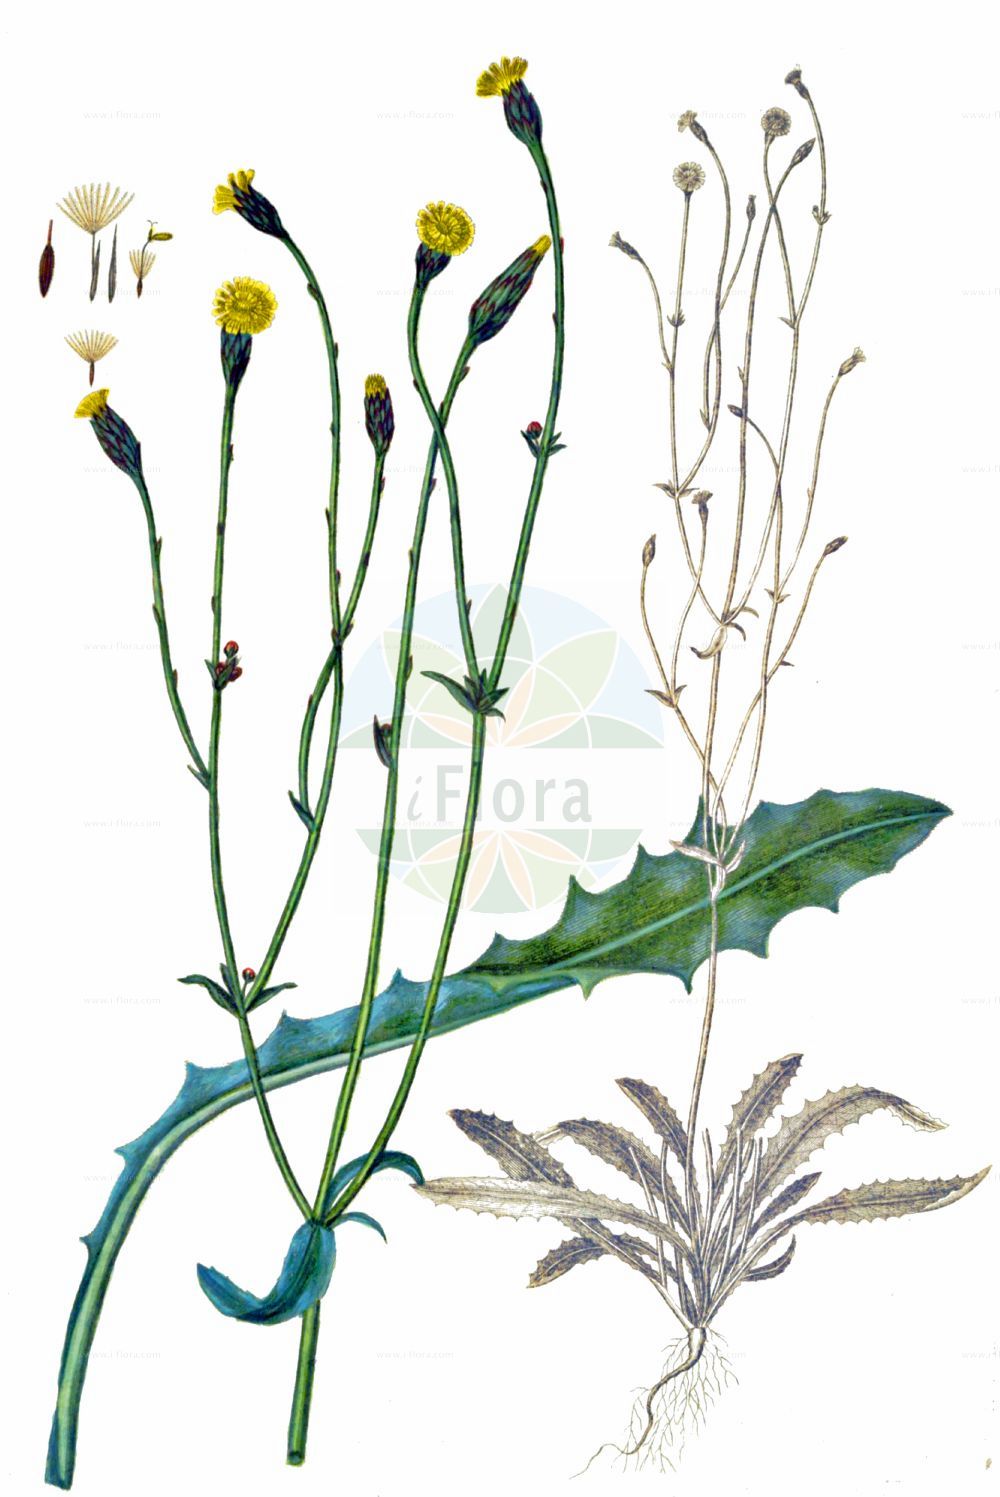 Historische Abbildung von Hypochaeris glabra (Kahles Ferkelkraut - Smooth Cat's-ear). Das Bild zeigt Blatt, Bluete, Frucht und Same. ---- Historical Drawing of Hypochaeris glabra (Kahles Ferkelkraut - Smooth Cat's-ear). The image is showing leaf, flower, fruit and seed.(Hypochaeris glabra,Kahles Ferkelkraut,Smooth Cat's-ear,Hypochaeris balbisii,Hypochaeris glabra,Hypochaeris simplex,Kahles Ferkelkraut,Smooth Cat's-ear,Cat's-ear,False Dandelion,Hypochaeris,Ferkelkraut,Cat's Ear,Asteraceae,Korbblütengewächse,Daisy family,Blatt,Bluete,Frucht,Same,leaf,flower,fruit,seed,Oeder (1761-1883))